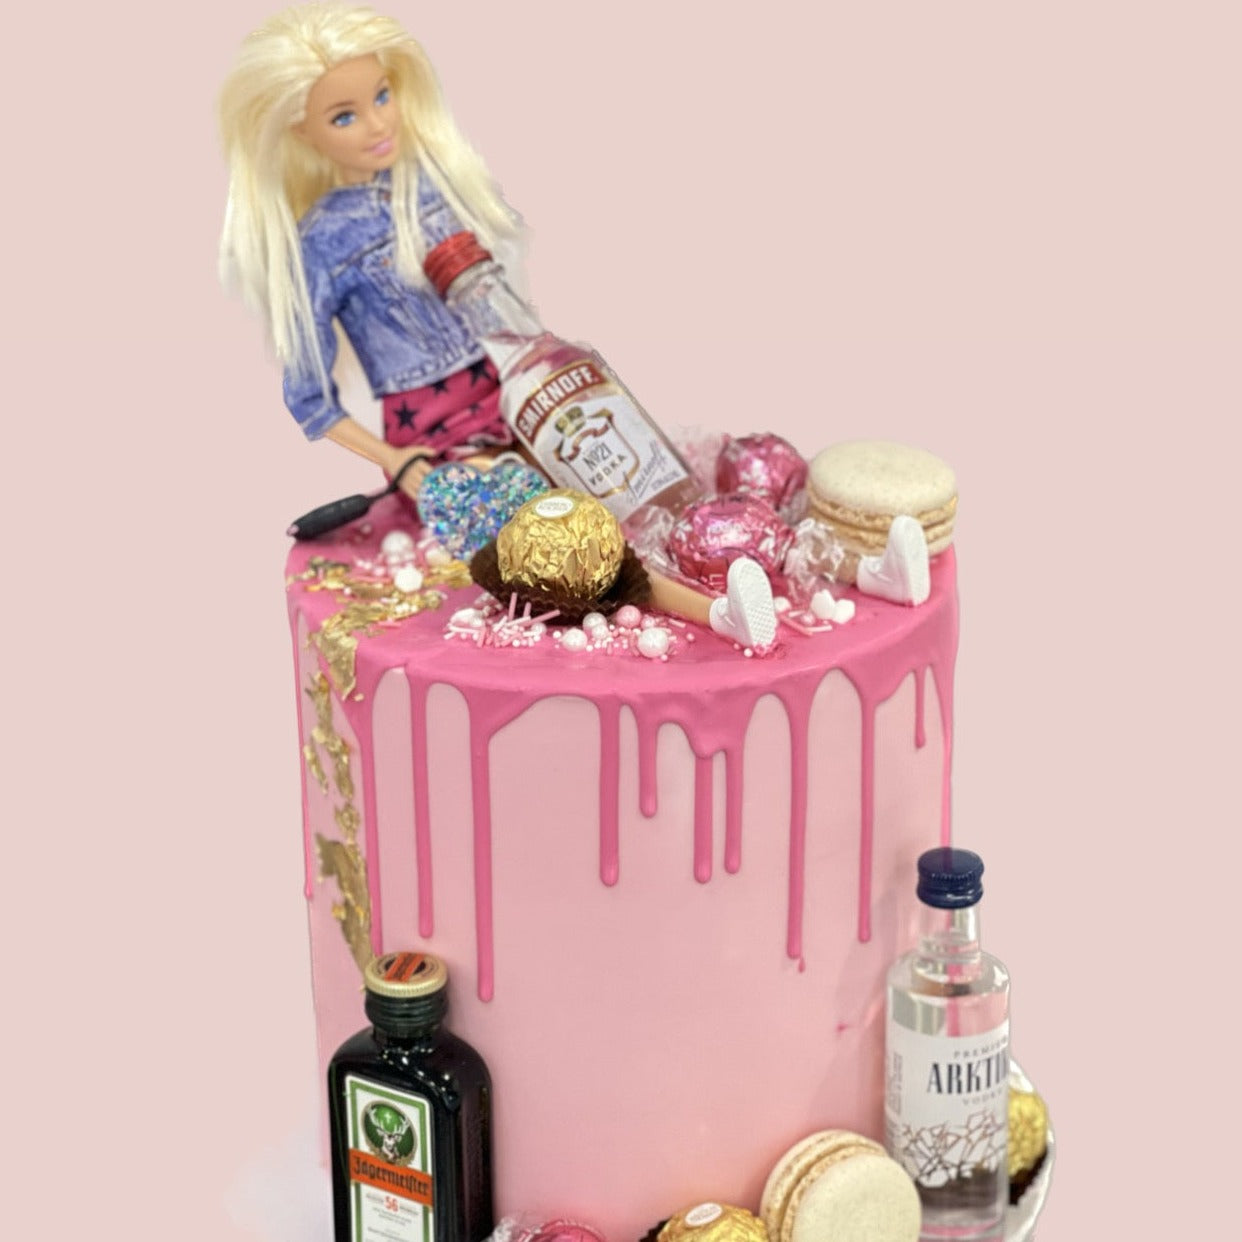 Boozy Barbie Cake